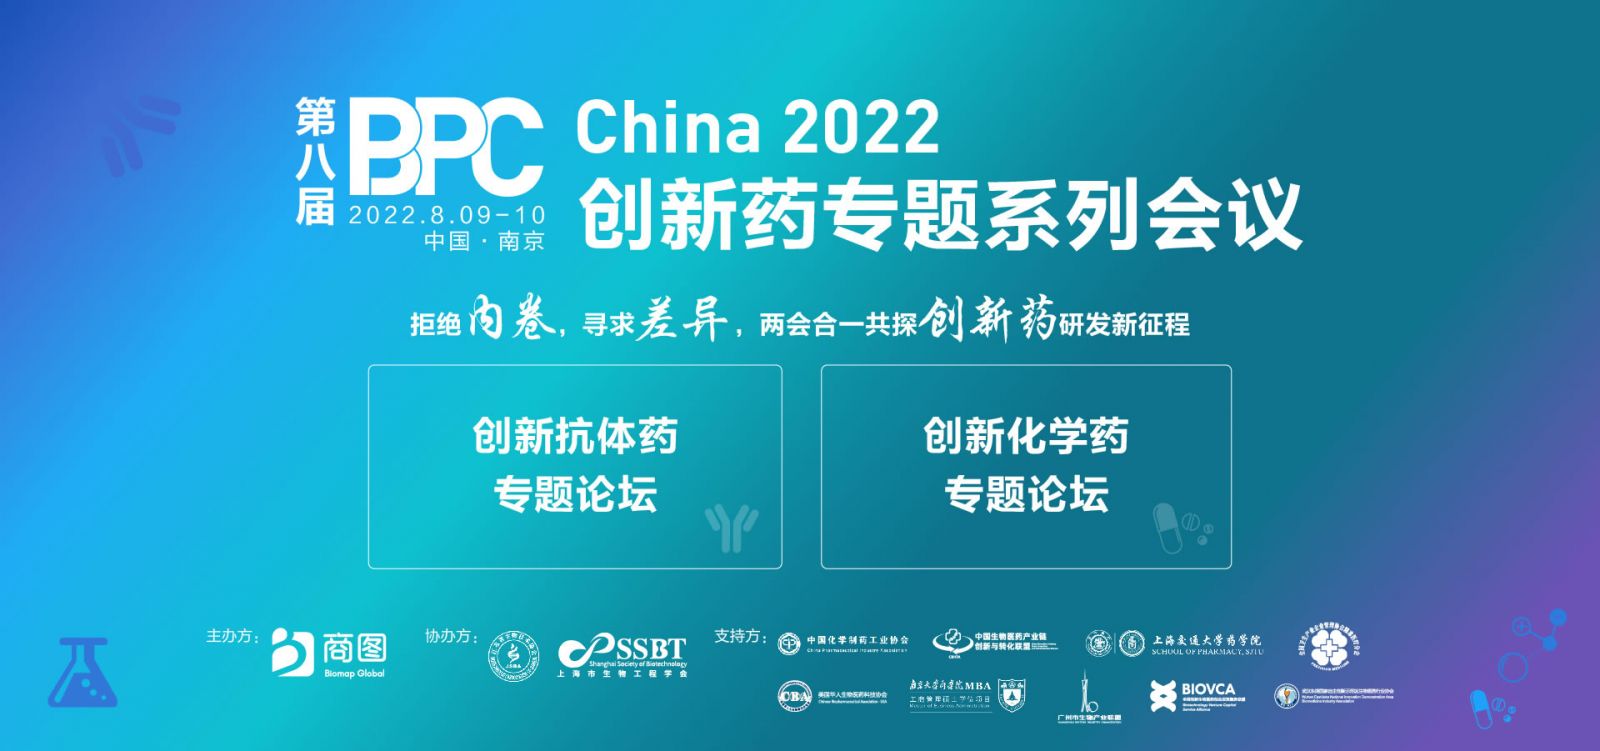 BPC 2022 创新药系列专题会议在南京圆满落幕